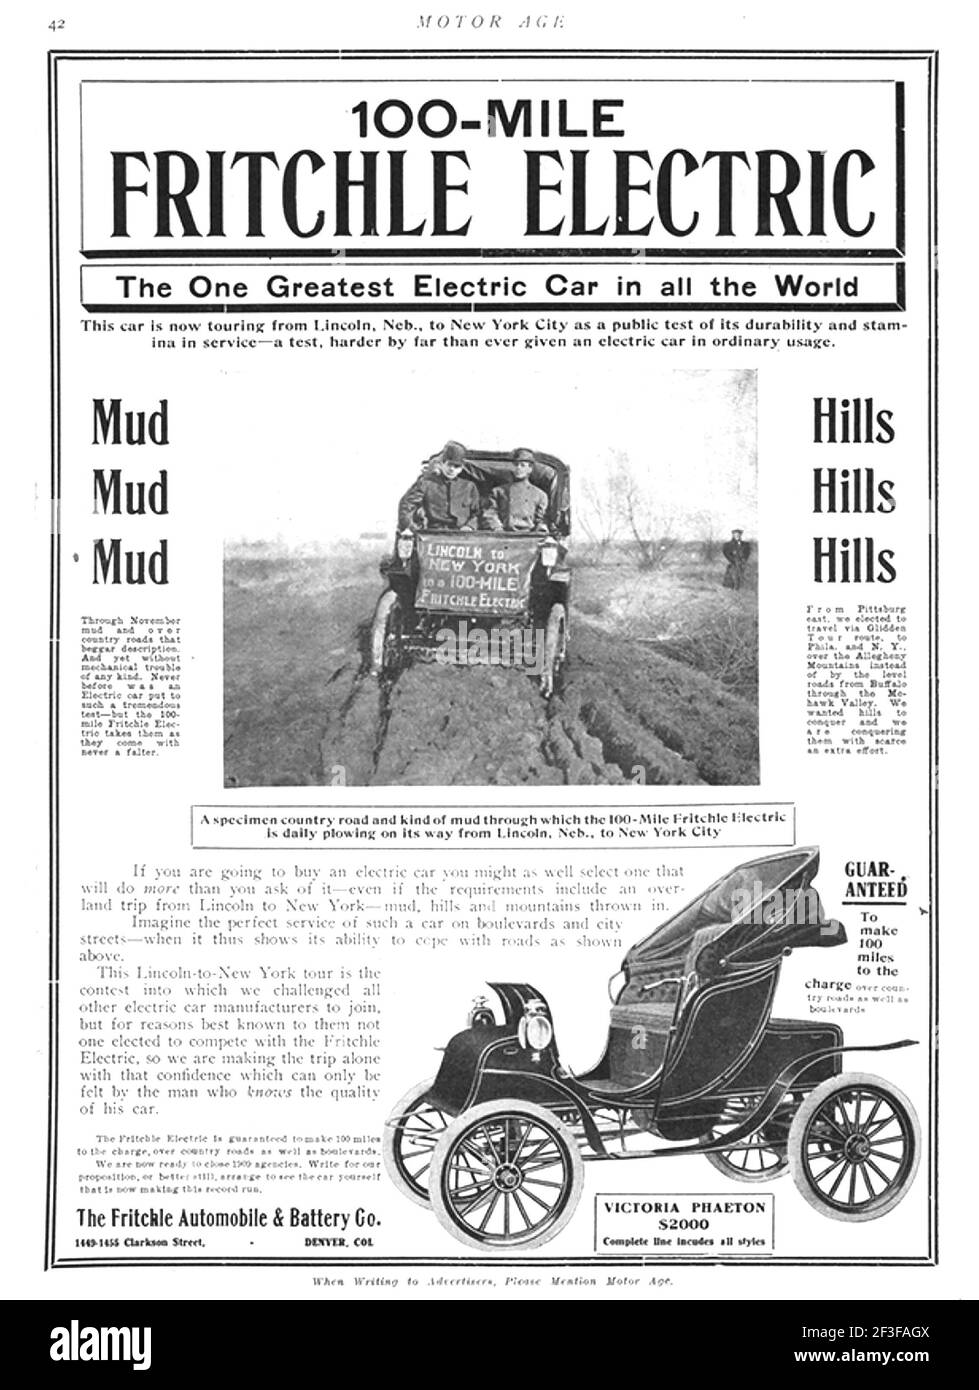 OLIVER FRITCHLE (1874-1951) químico estadounidense y pionero del vehículo eléctrico. Informe contemporáneo sobre su épica conducción de 1800 millas en un coche Victoria Phaeton estándar en 1908 de Lincoln a Nueva York Foto de stock